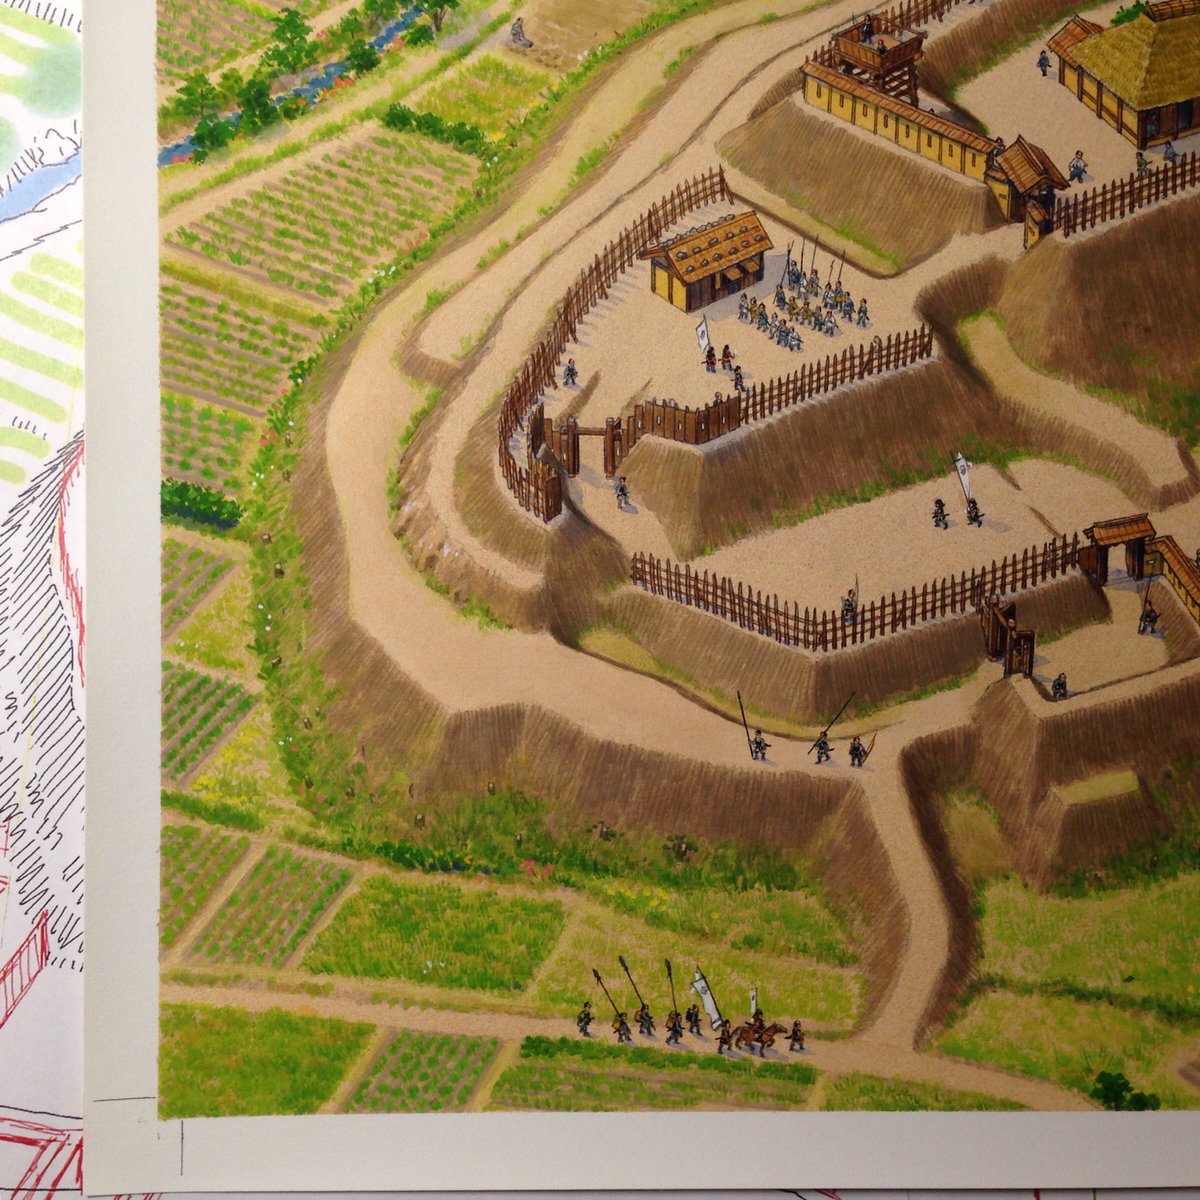 香川元太郎 私の中世城郭の描き方13完成 色々な工程を経て 城の復元イラストが完成します 特に戦国時代の土の城では 地形 縄張りを正確に起こせるかどうかがポイントだと思います